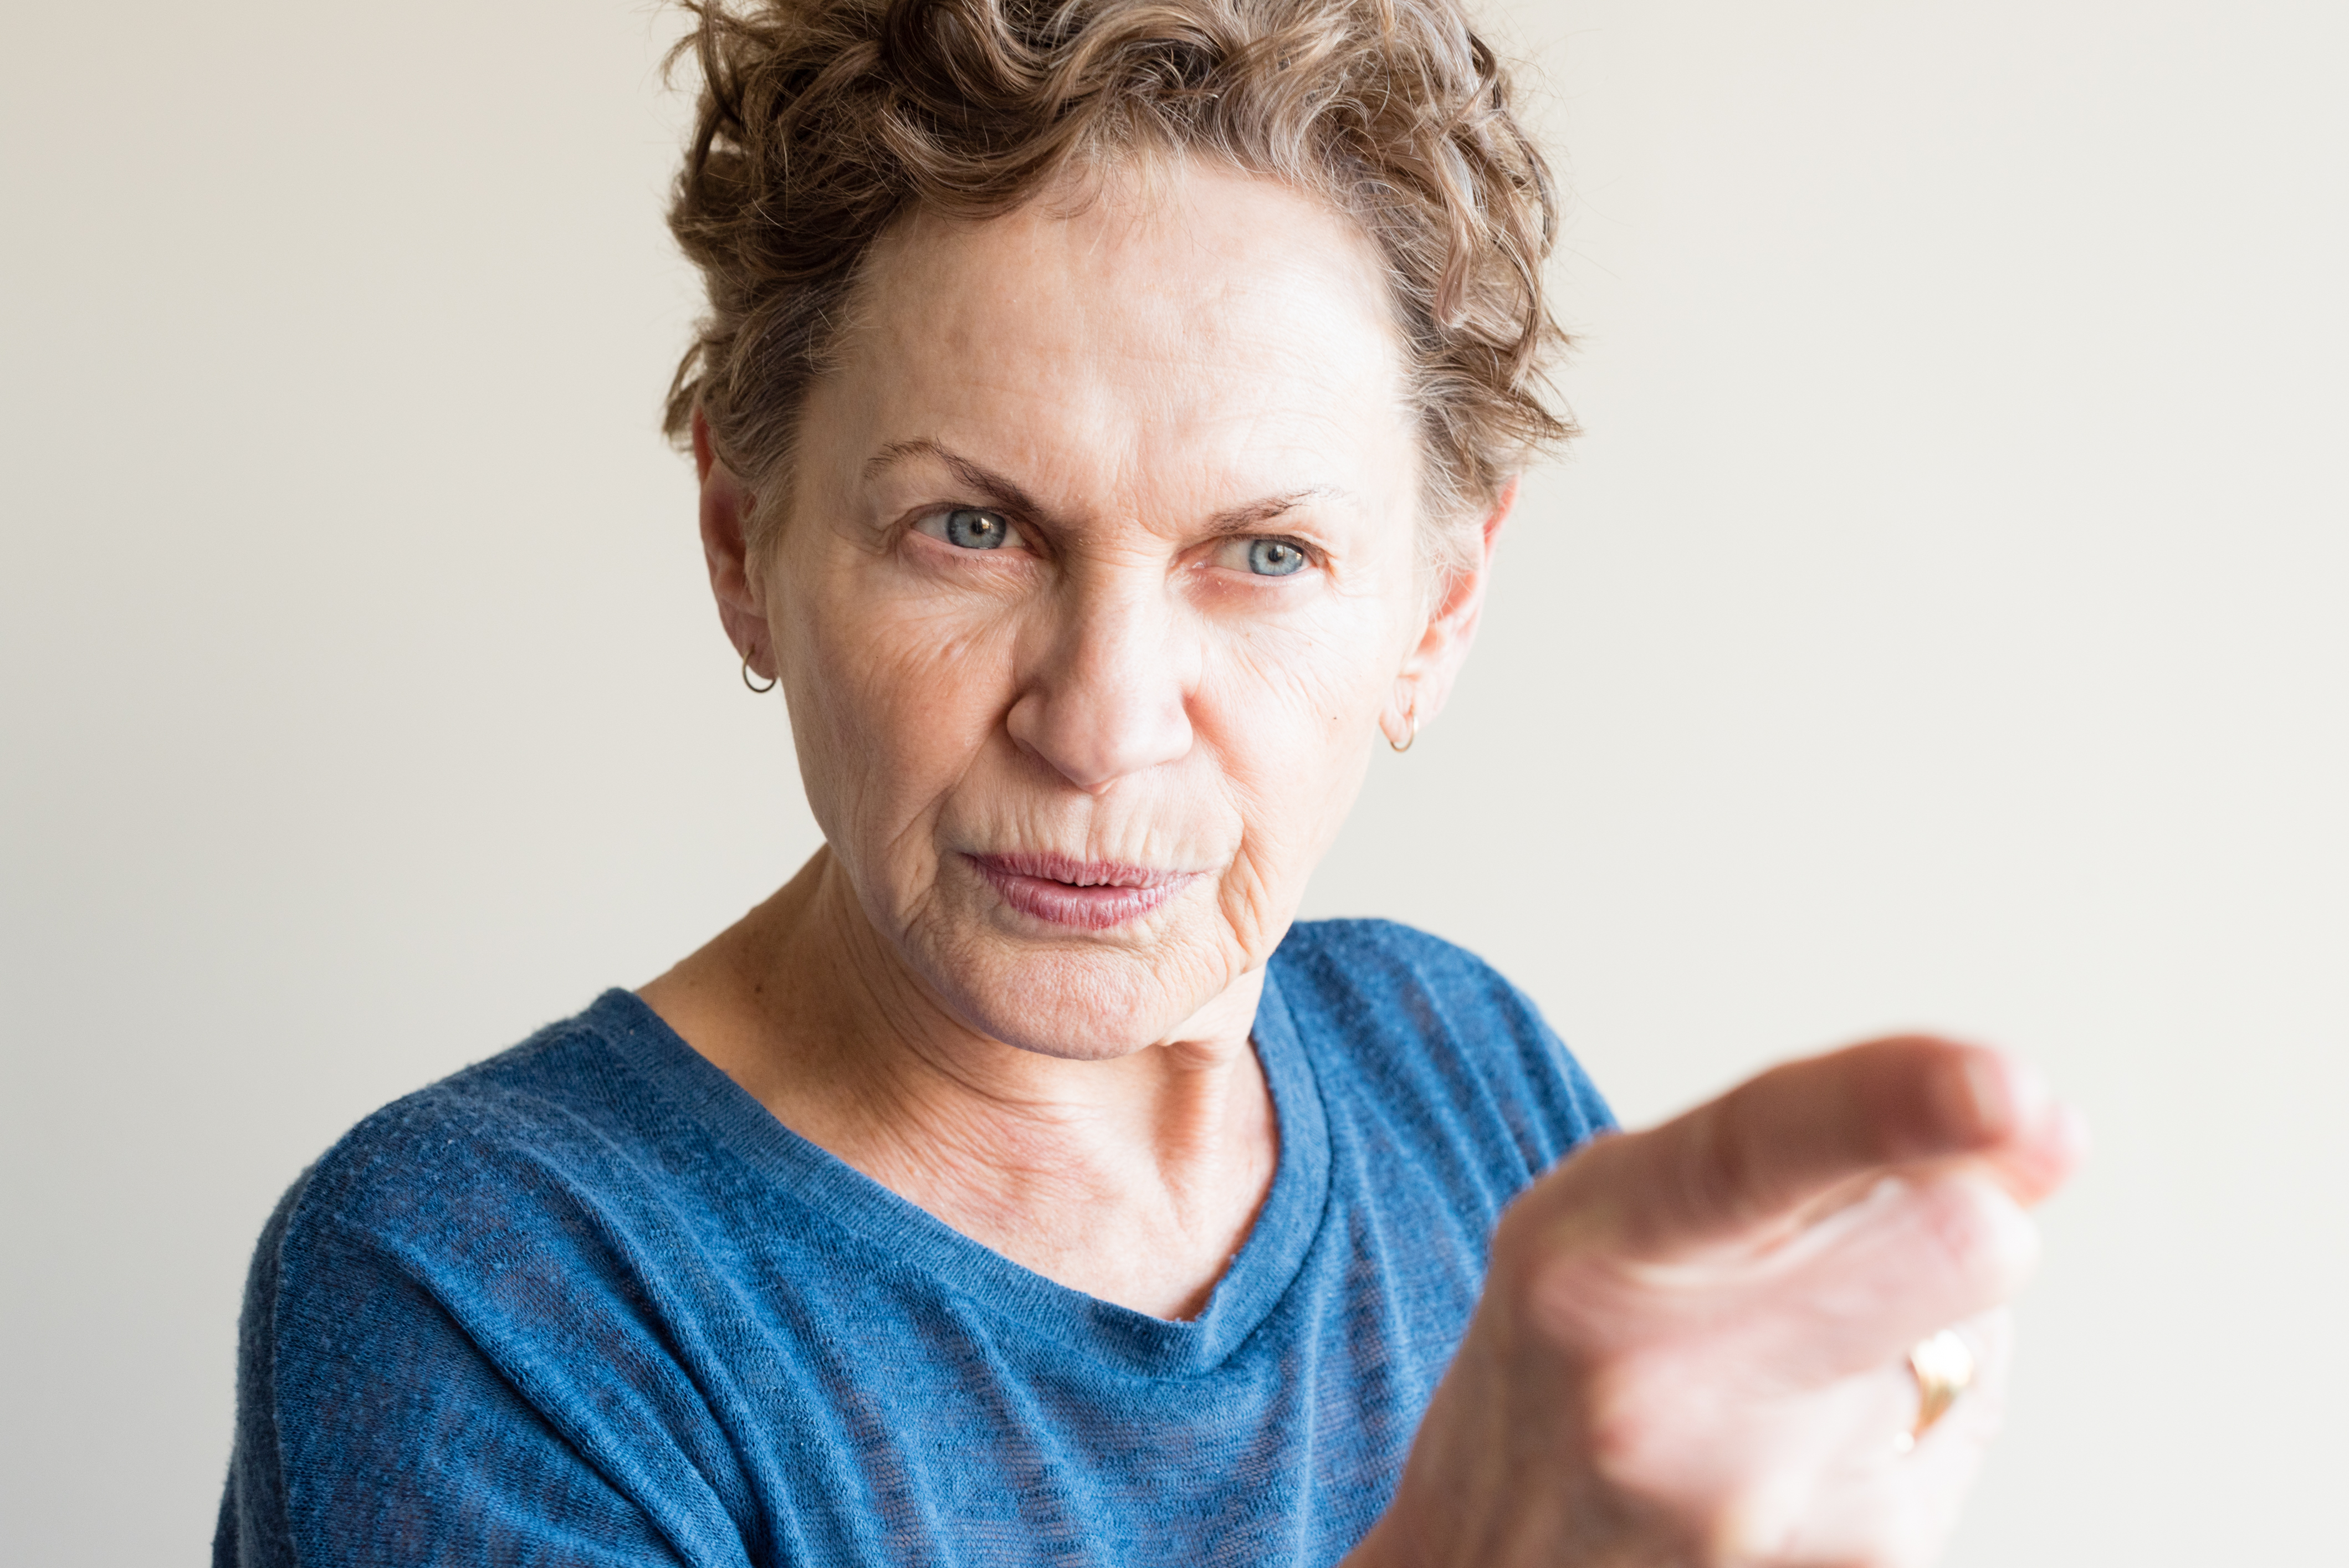 Une femme âgée qui pointe son doigt en signe de colère | Source : Shutterstock